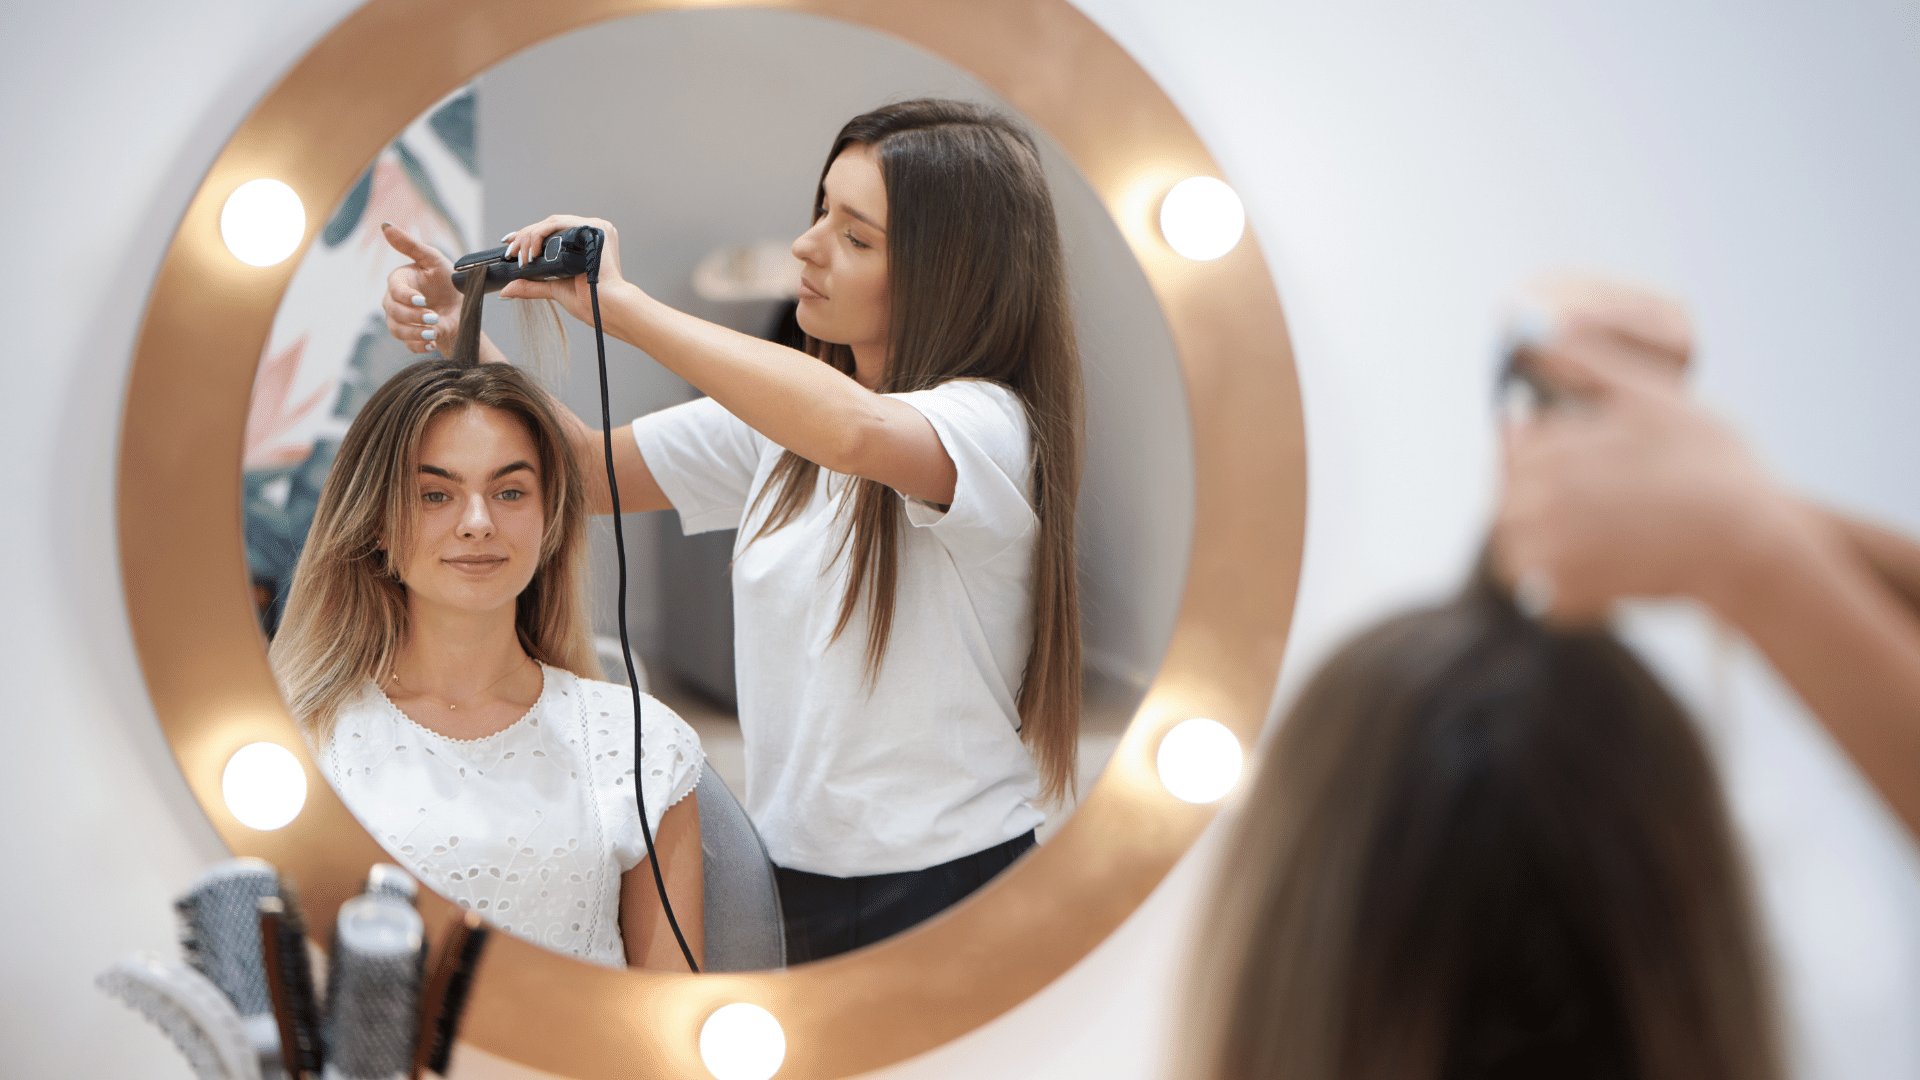 Espelho mostrando reflexo de uma mulher passando chapinha no cabelo de outra moça